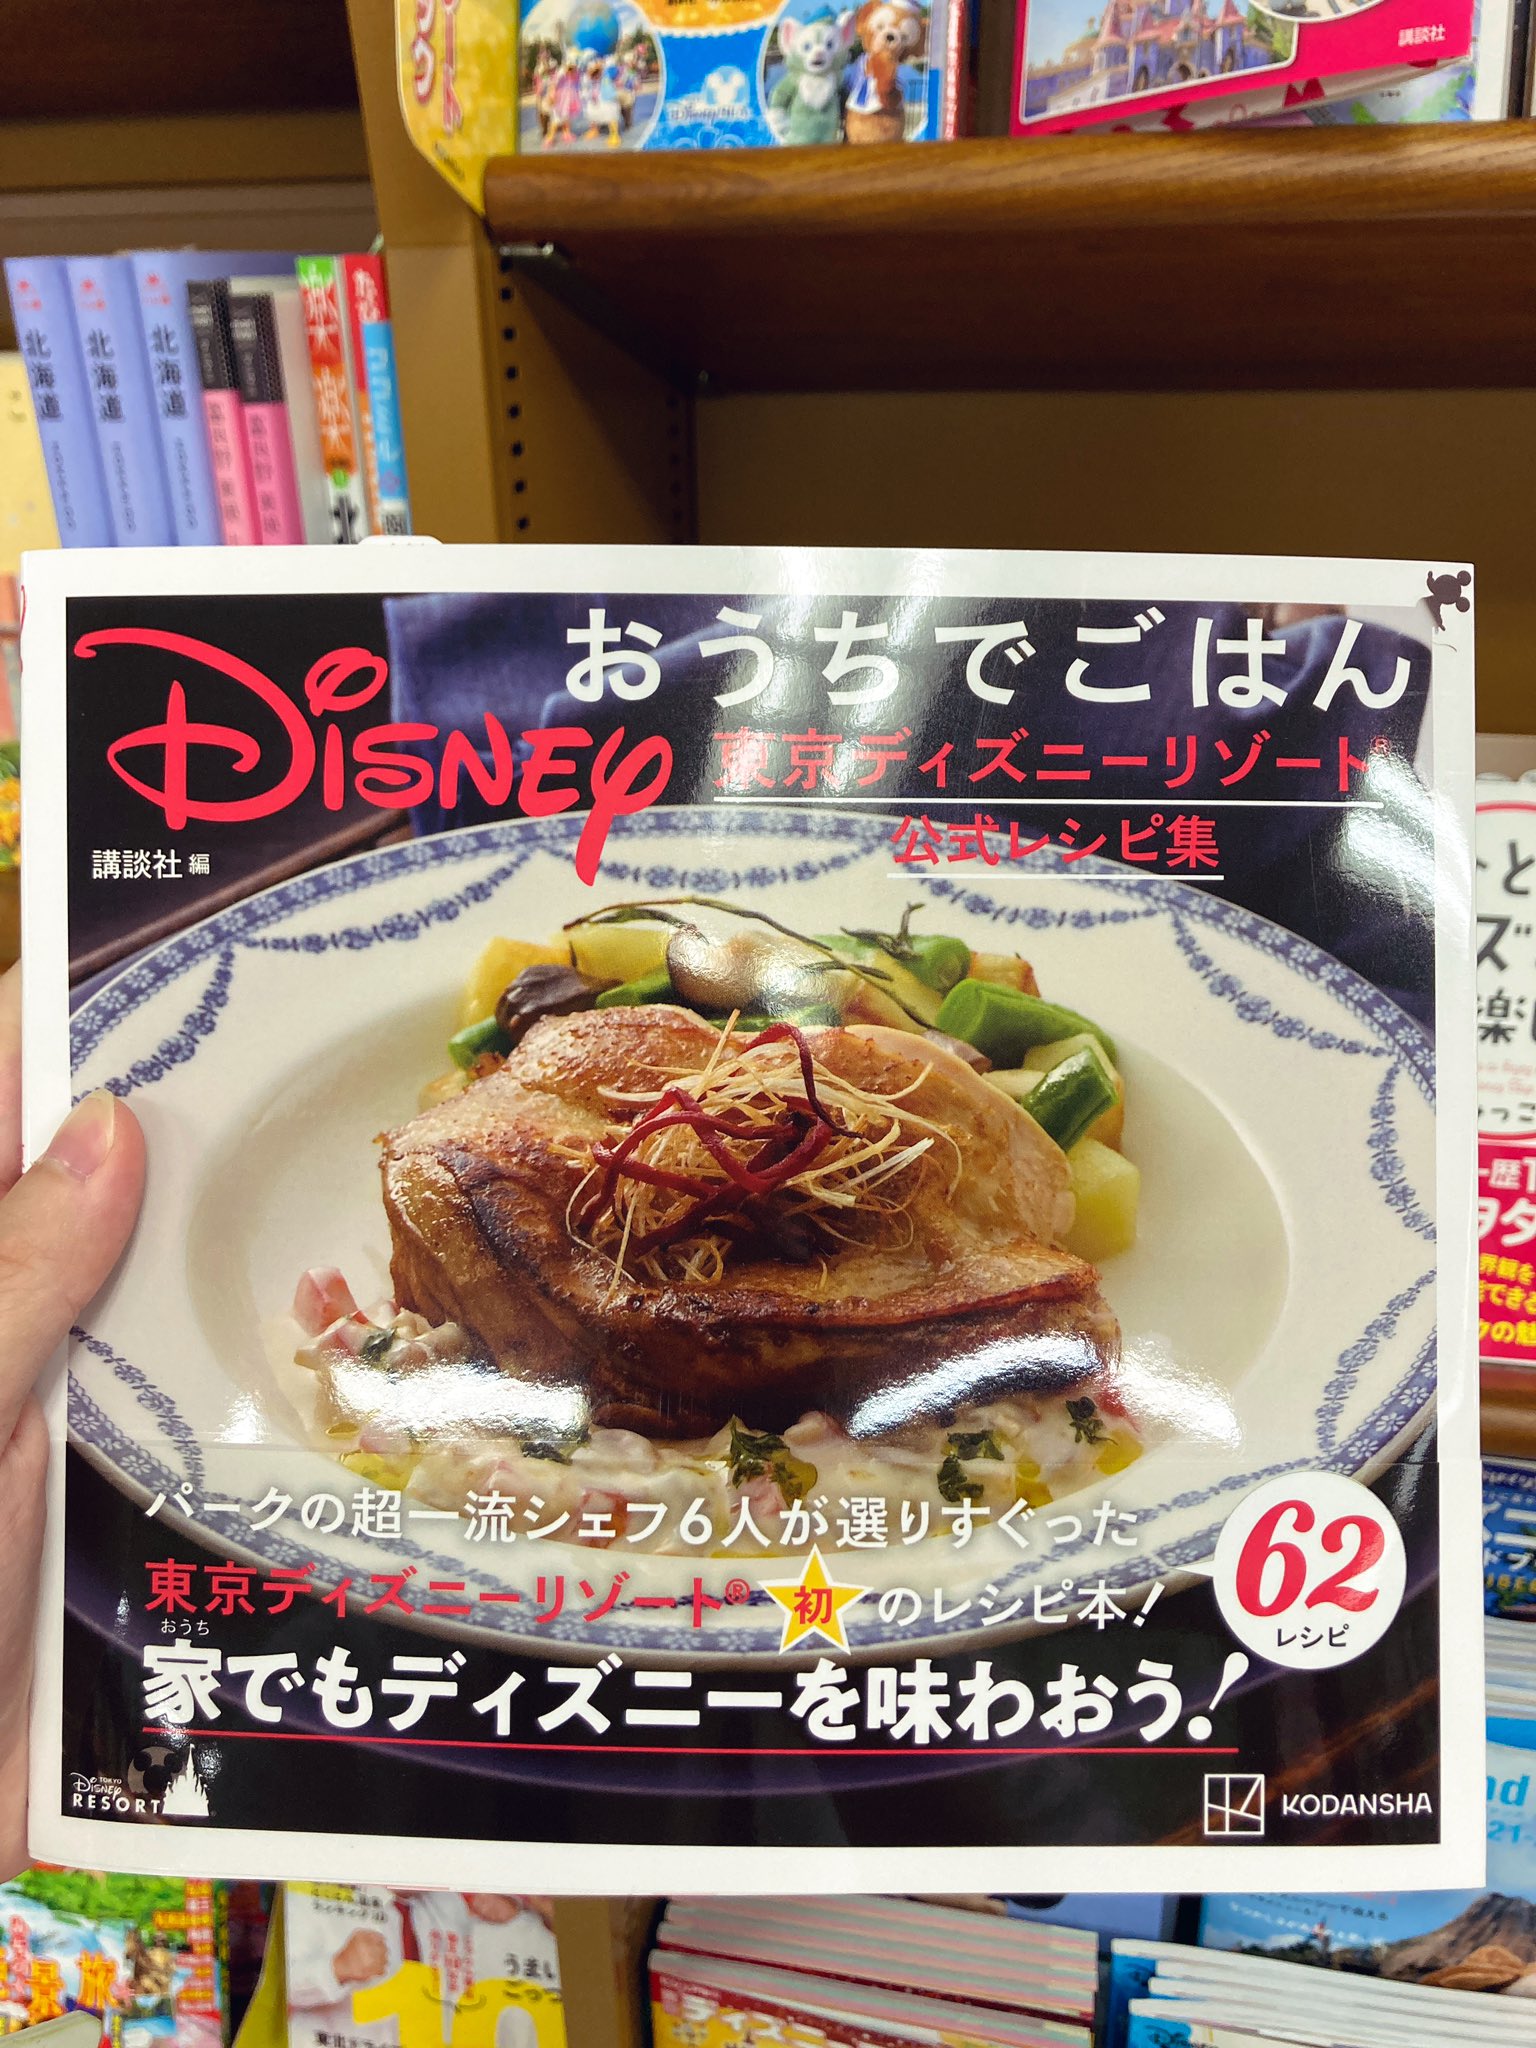 丸善 広島店 Disneyおうちでごはん 東京ディズニーリゾート公式レシピ集 入荷しております 東京ディズニーリゾート初の レシピ本となっております 8f 実用書 その他料理 壁面国内ガイド 7fの新刊話題書にて展開中です T Co Qjh9b0k9wq